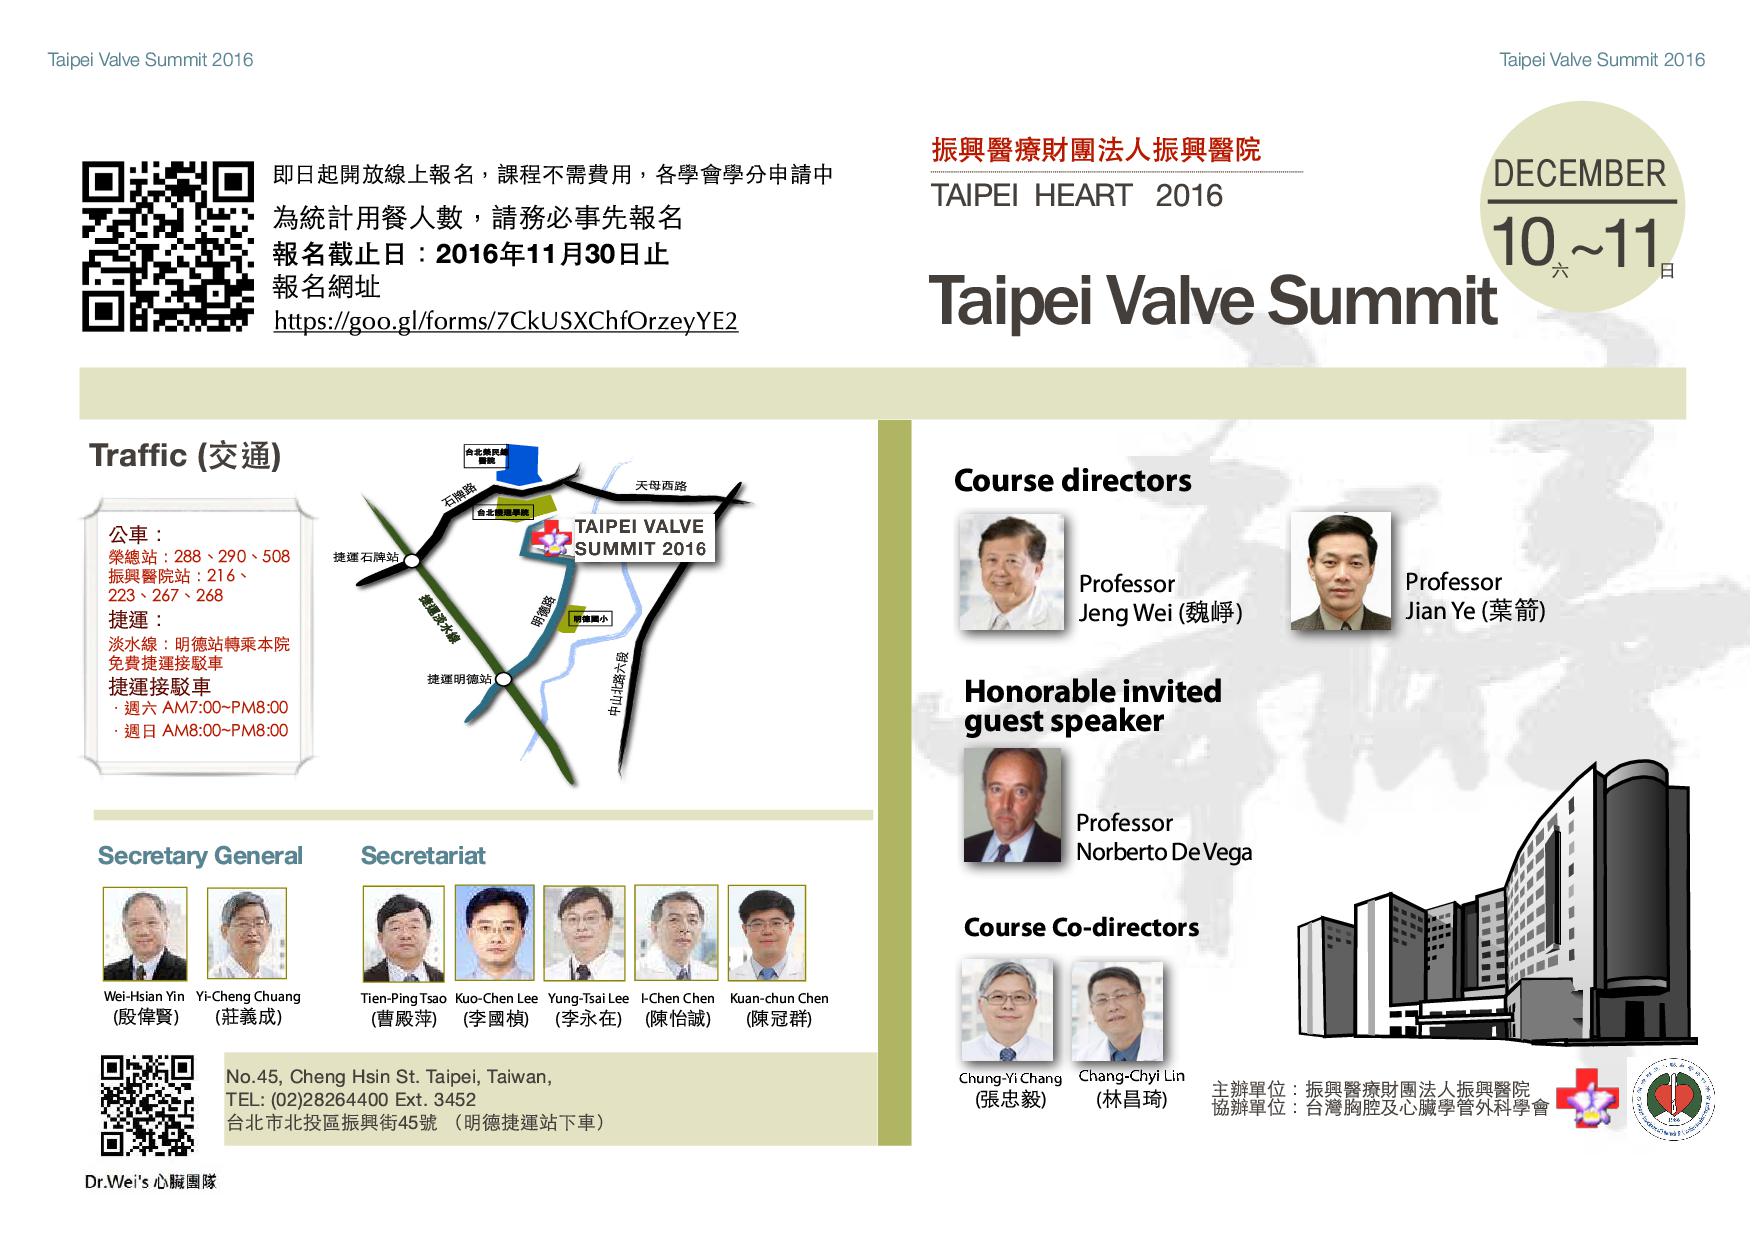 『Taipei Valve Summit』心血管疾病國際研討會